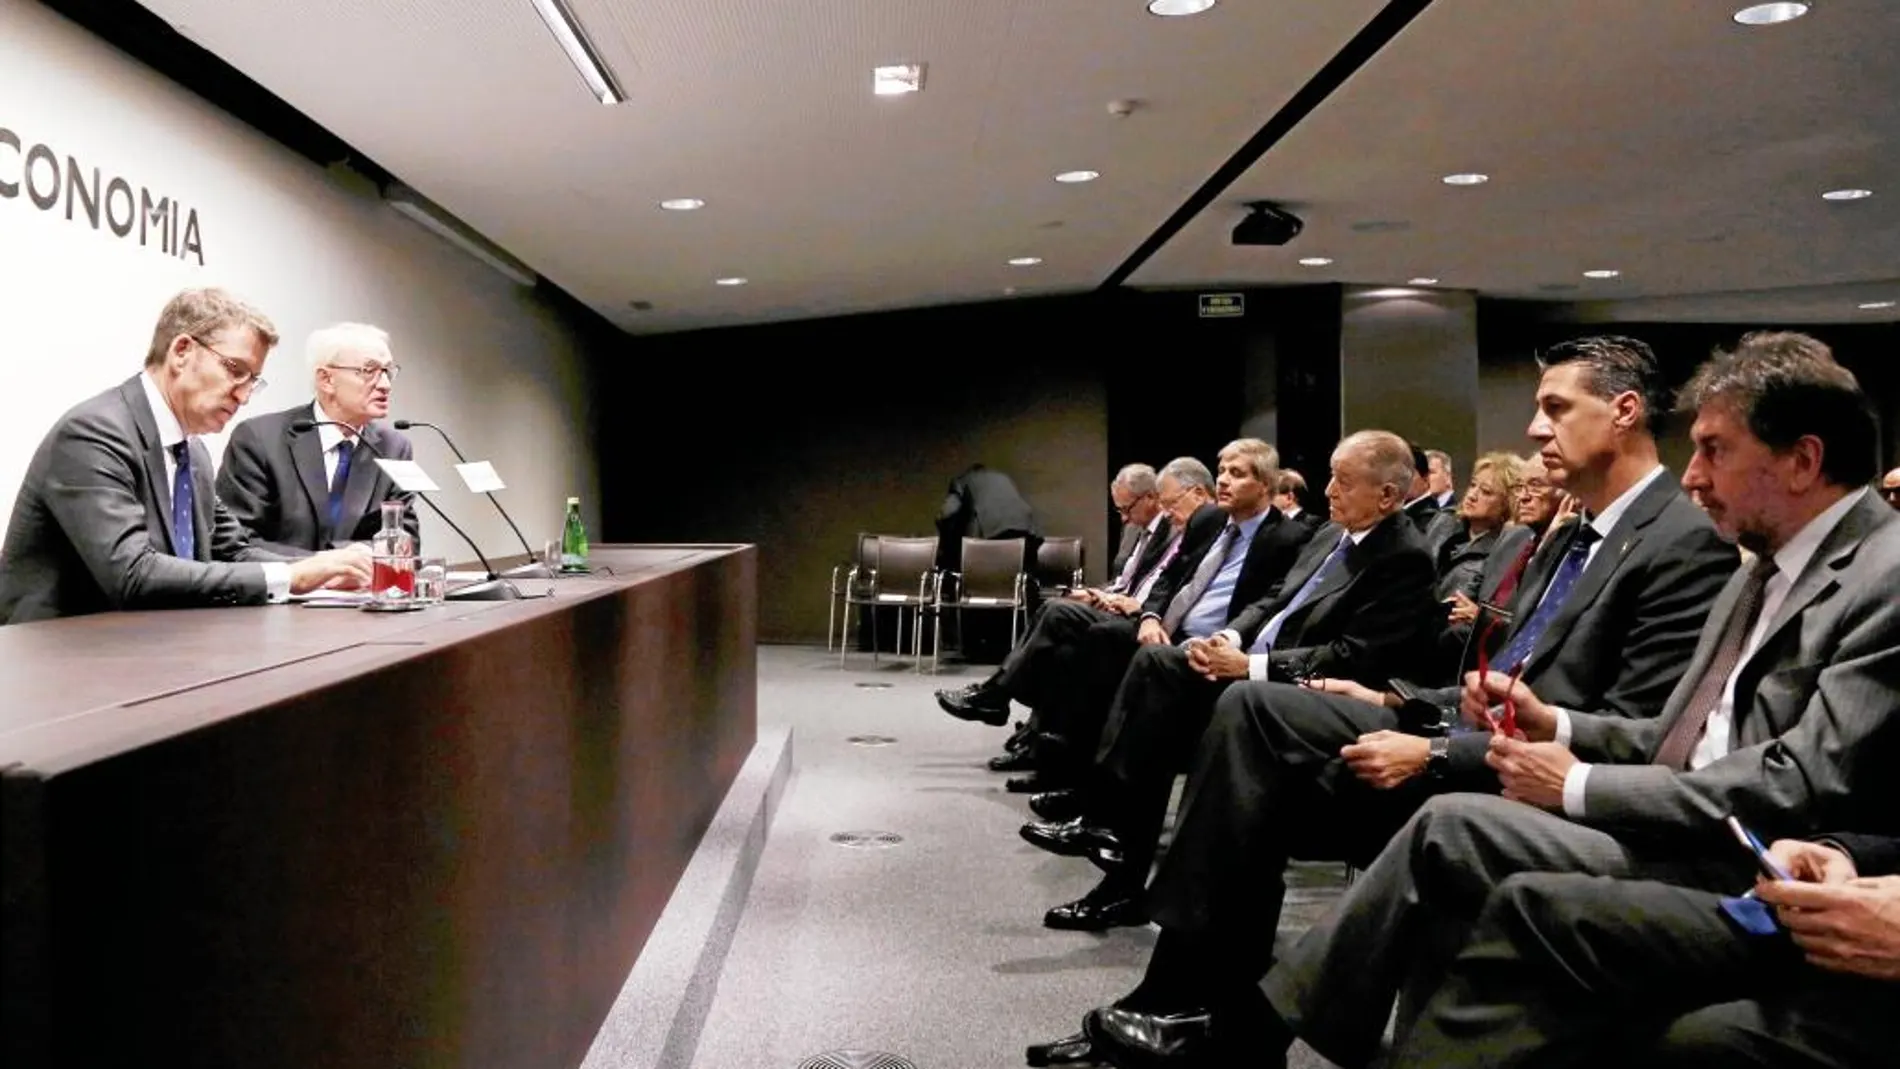 El presidente de la Xunta, Alberto Núñez Feijóo, protagonizó ayer una conferencia en el Círculo de Economía con la presencia de Xavier García Albiol y Alberto Fernández, entre otros